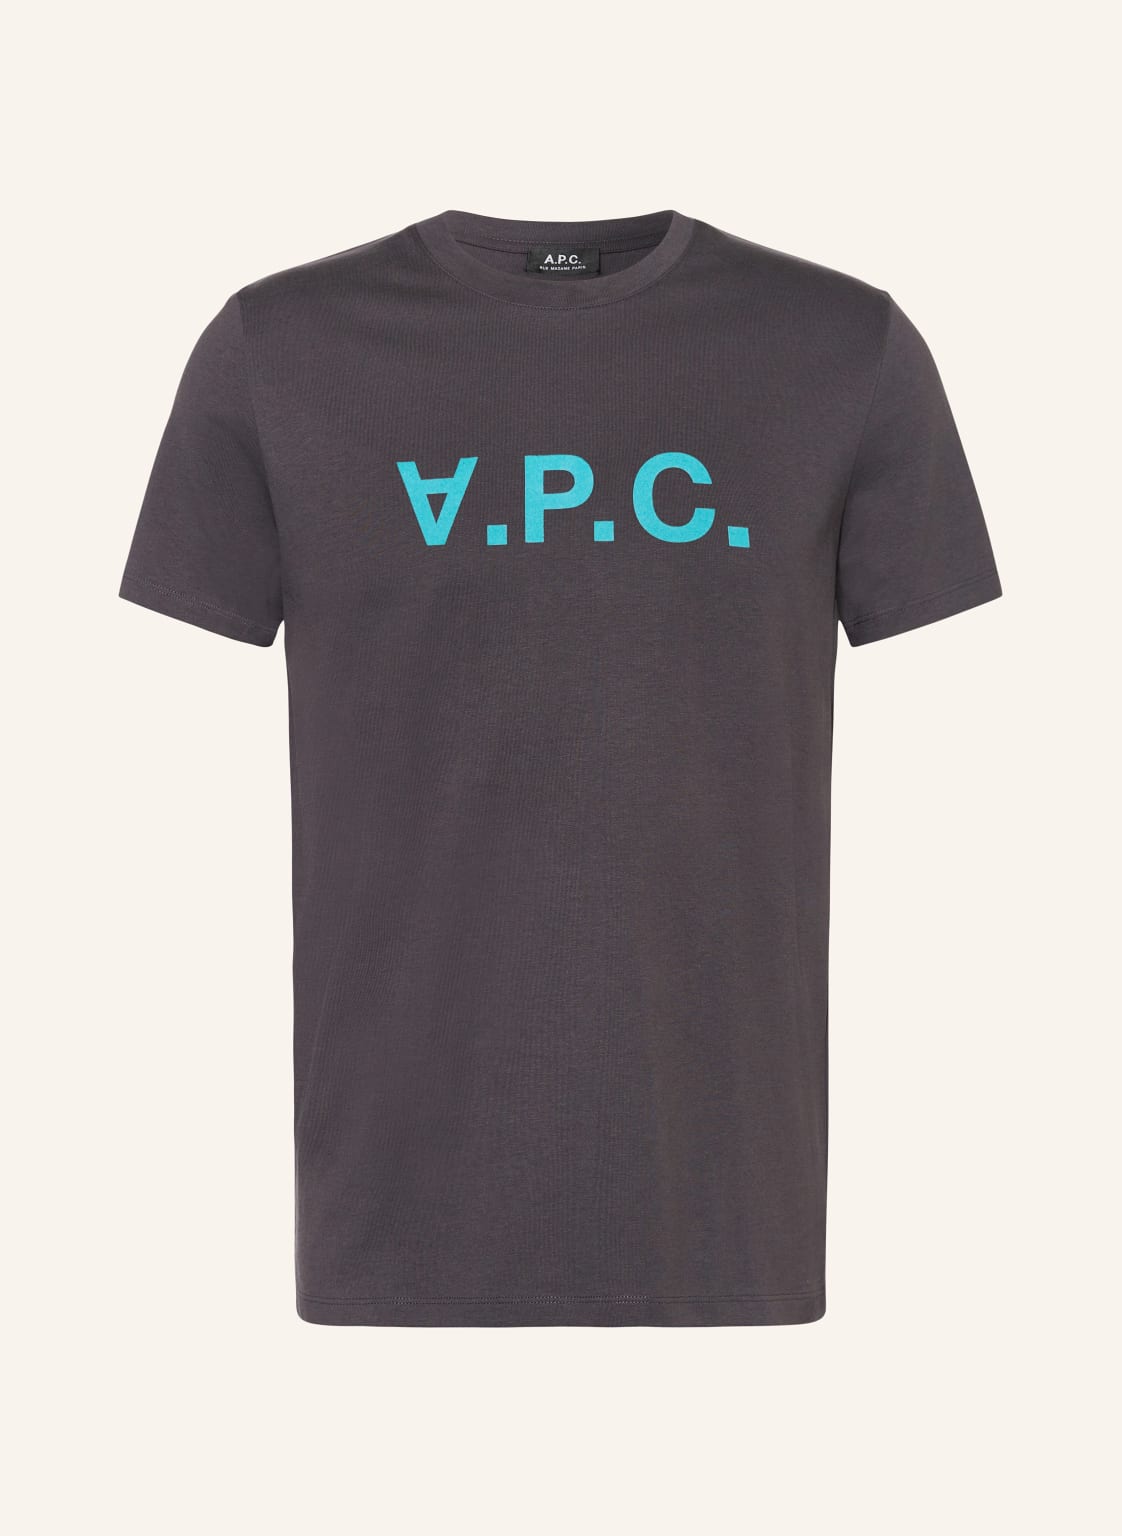 A.P.C. T-Shirt grau von A.P.C.